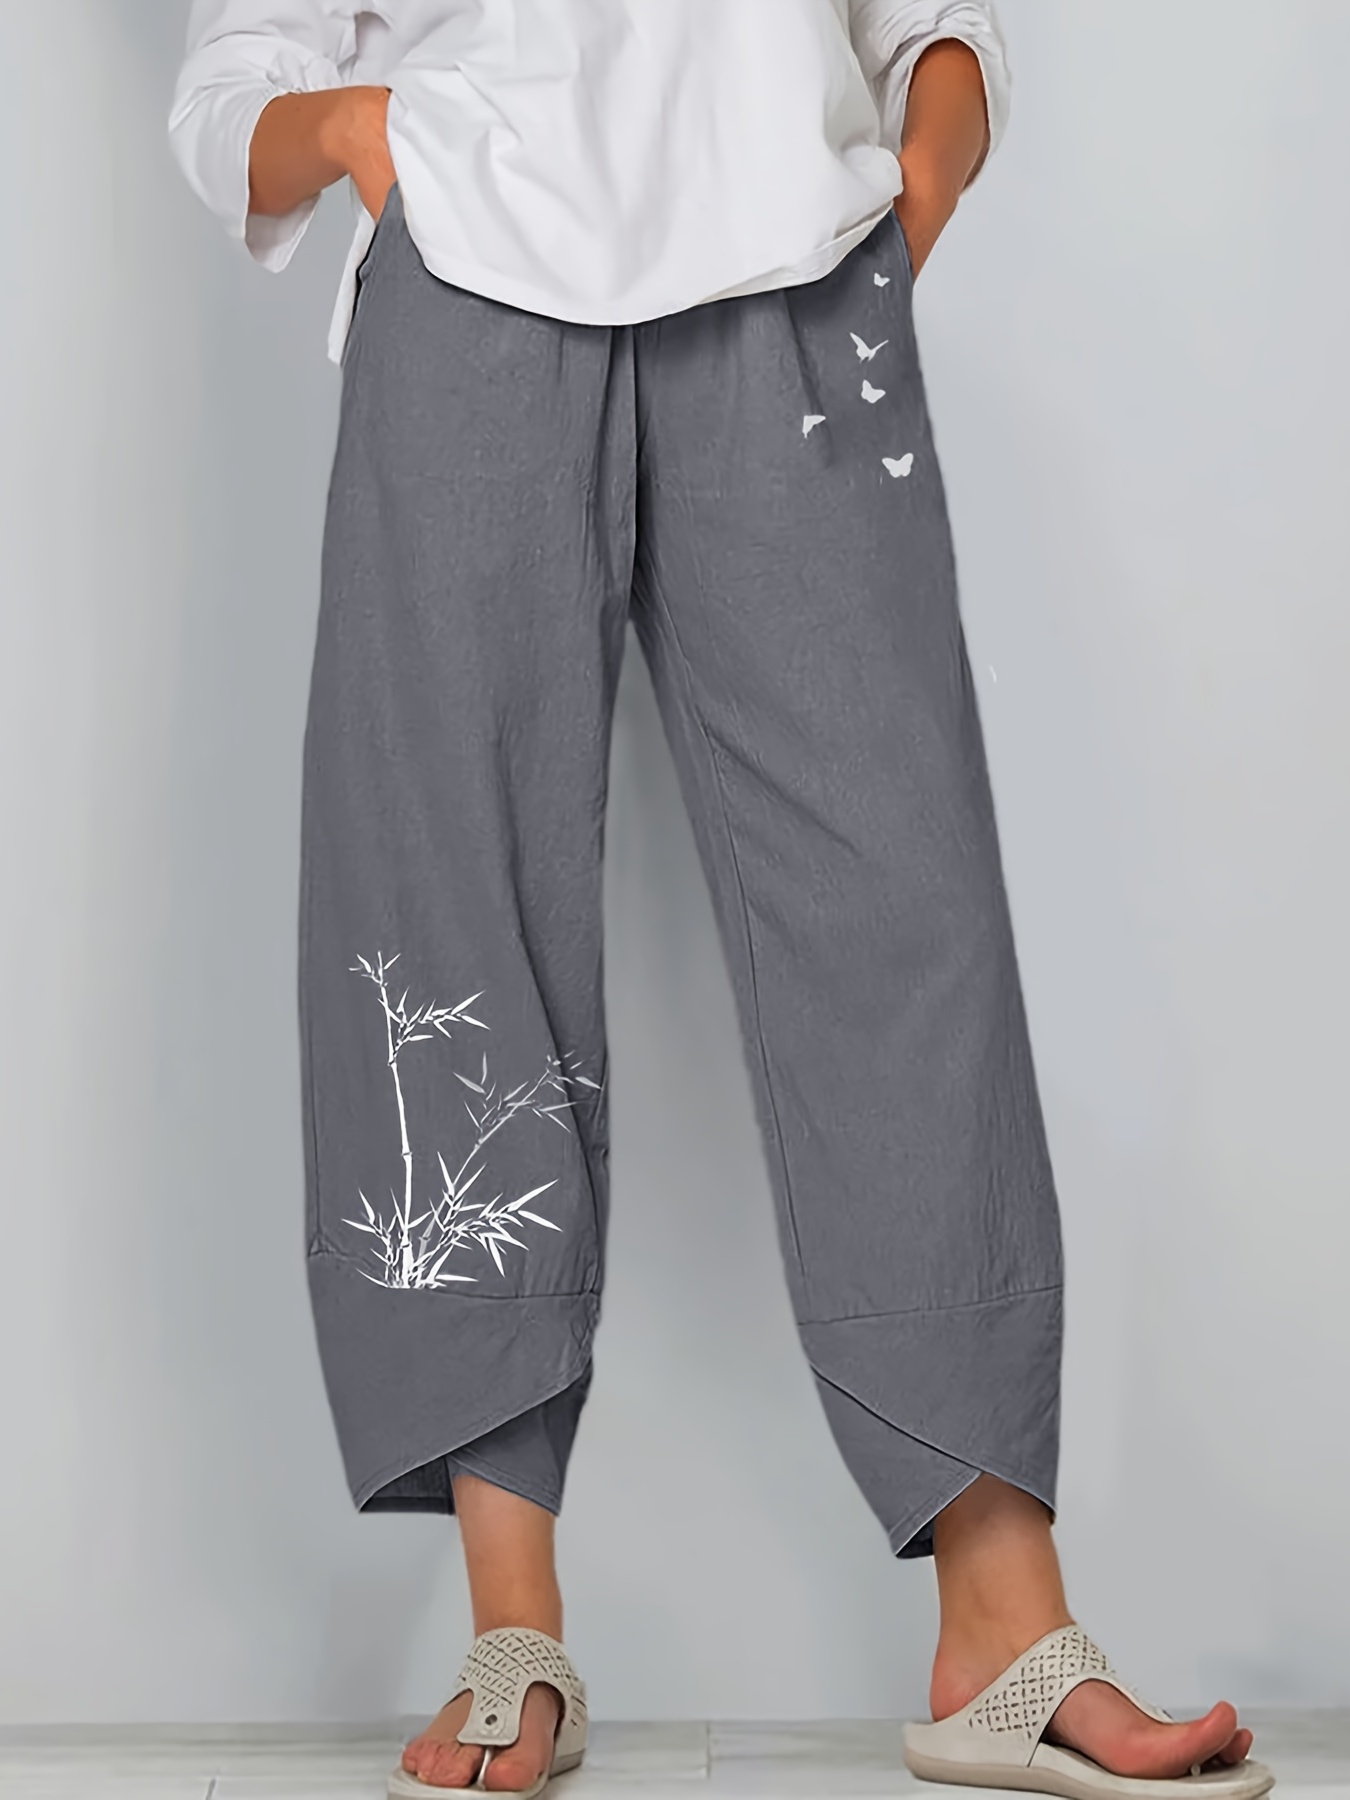 Linen Trousers Womens Women's Pants Casual High Waist Solid Summer